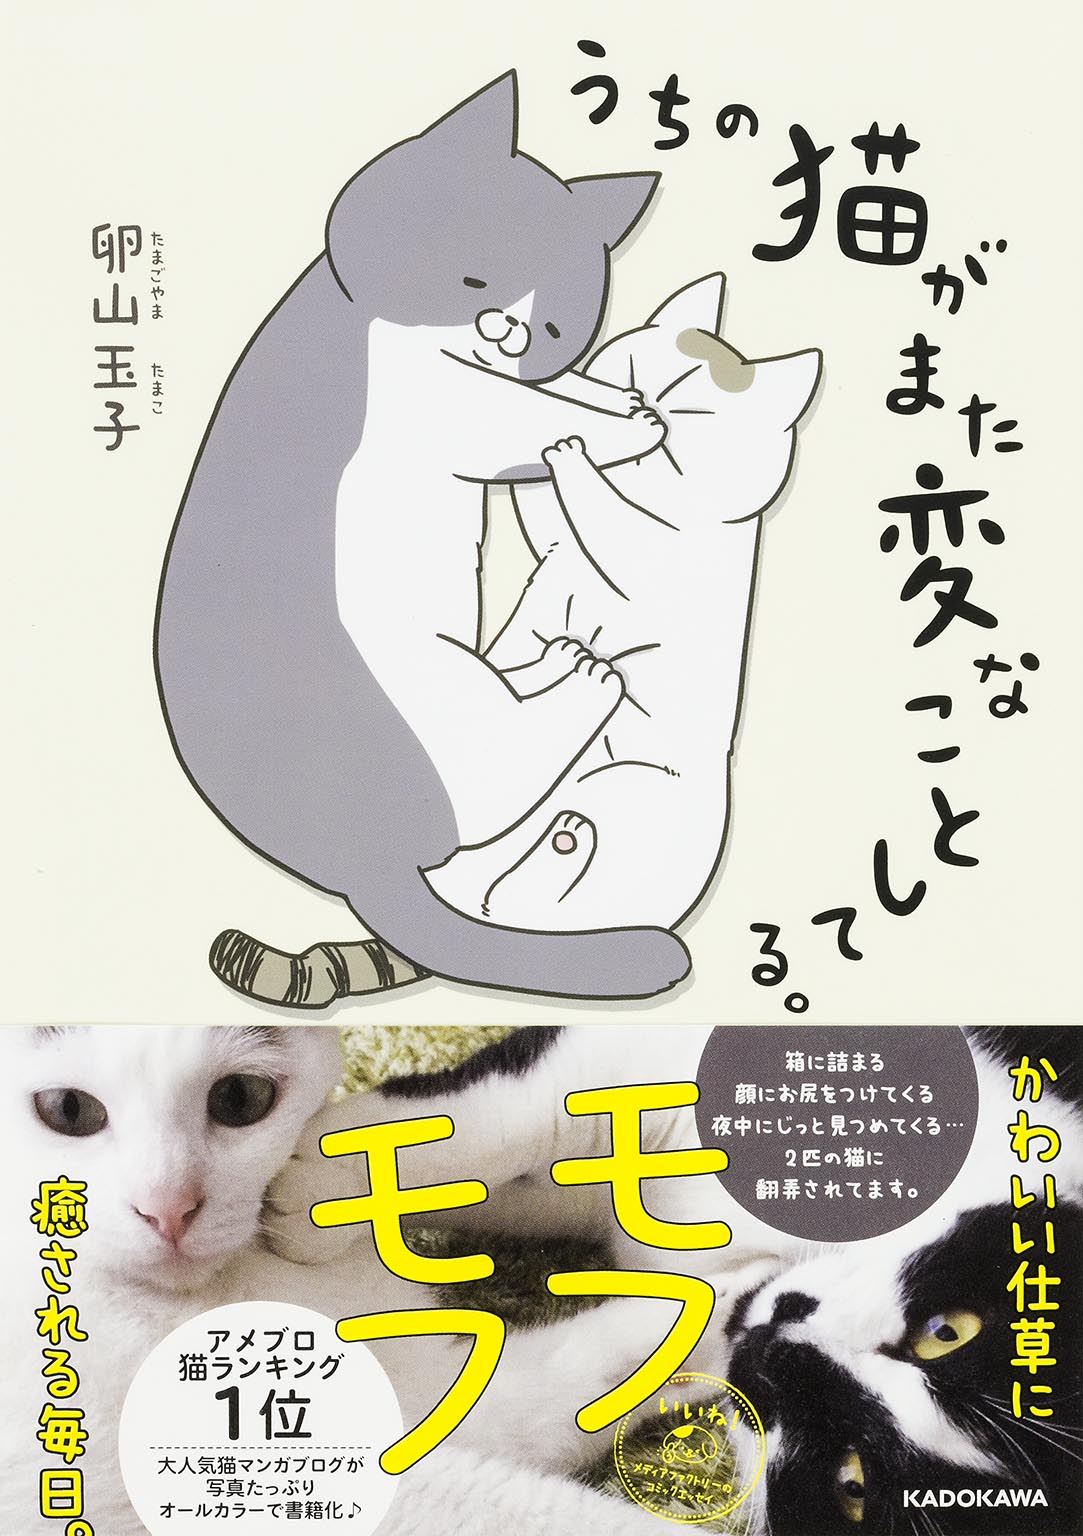 発売即重版が決定 アメブロ猫ランキング1位の大人気猫まんが うちの猫がまた変なことしてる が描きおろし を多数加えて発売 株式会社kadokawaのプレスリリース